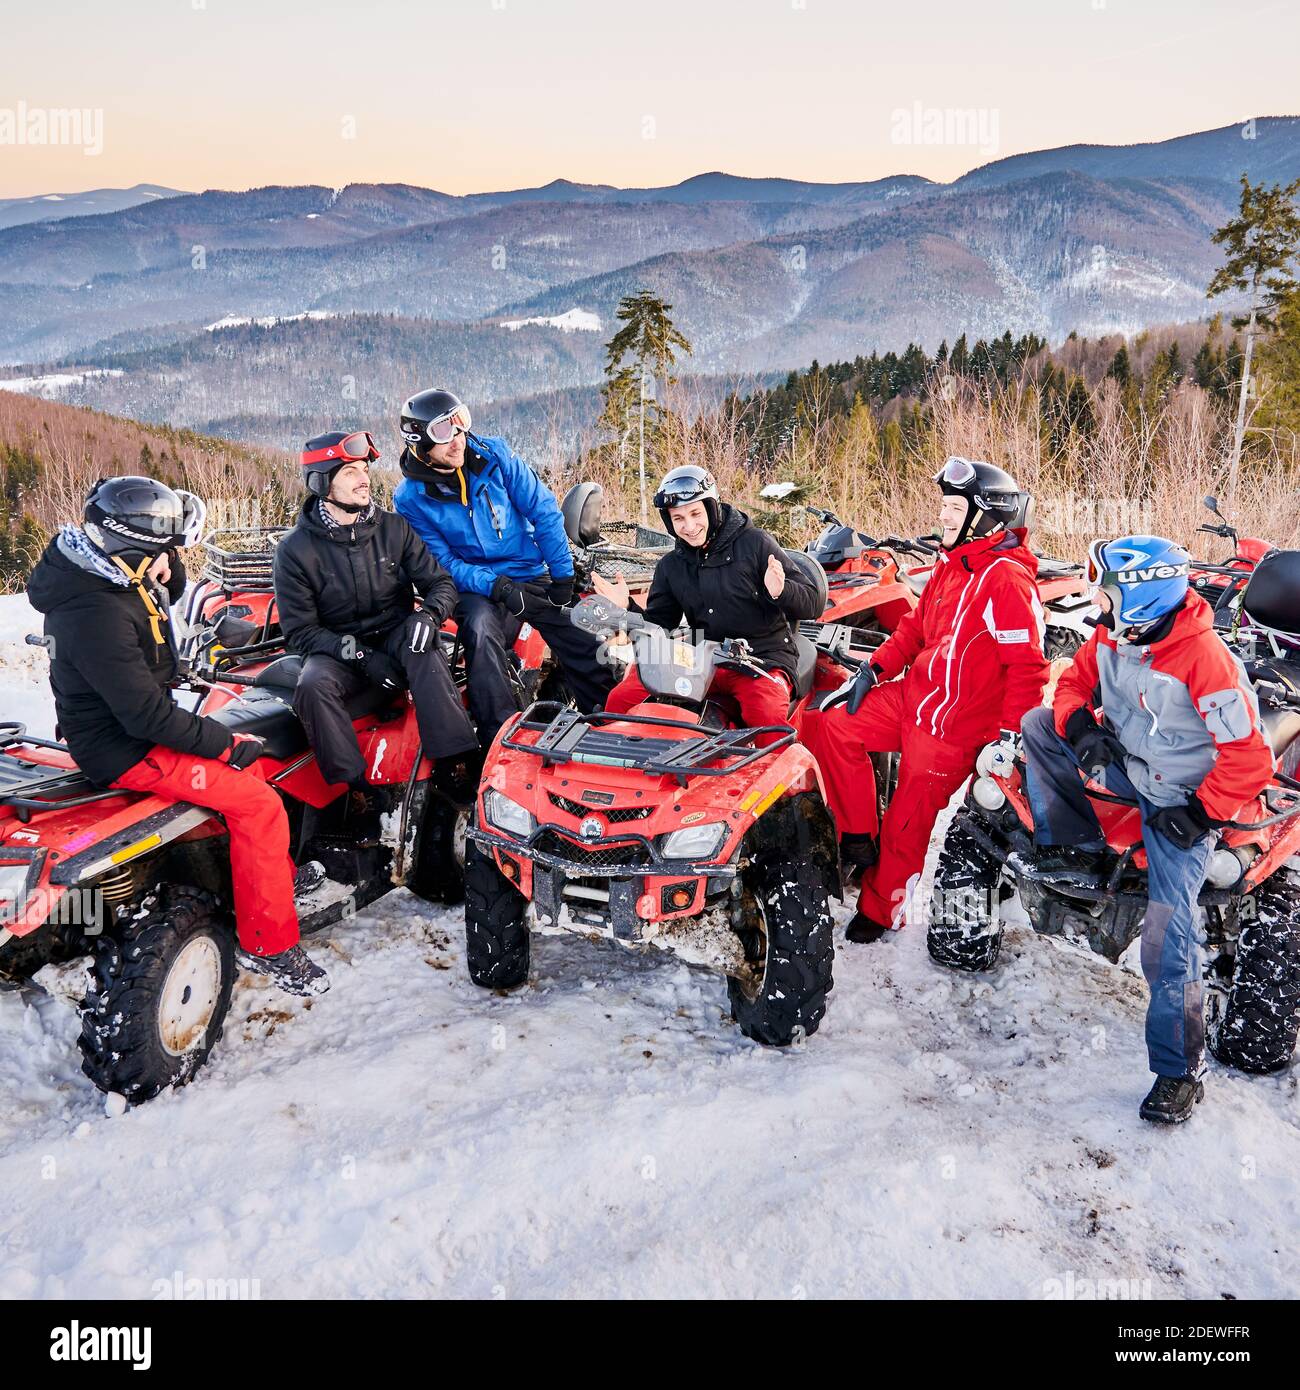 Yaremche, Ukraine - 02. Februar 2020: Gruppe von Männern, die auf ATV-Fahrrädern sitzen, kleine Gespräche führen und am kalten Wintertag in verschneiten Bergen lachen, Bergrücken im Hintergrund. Konzept der Freundschaft Stockfoto